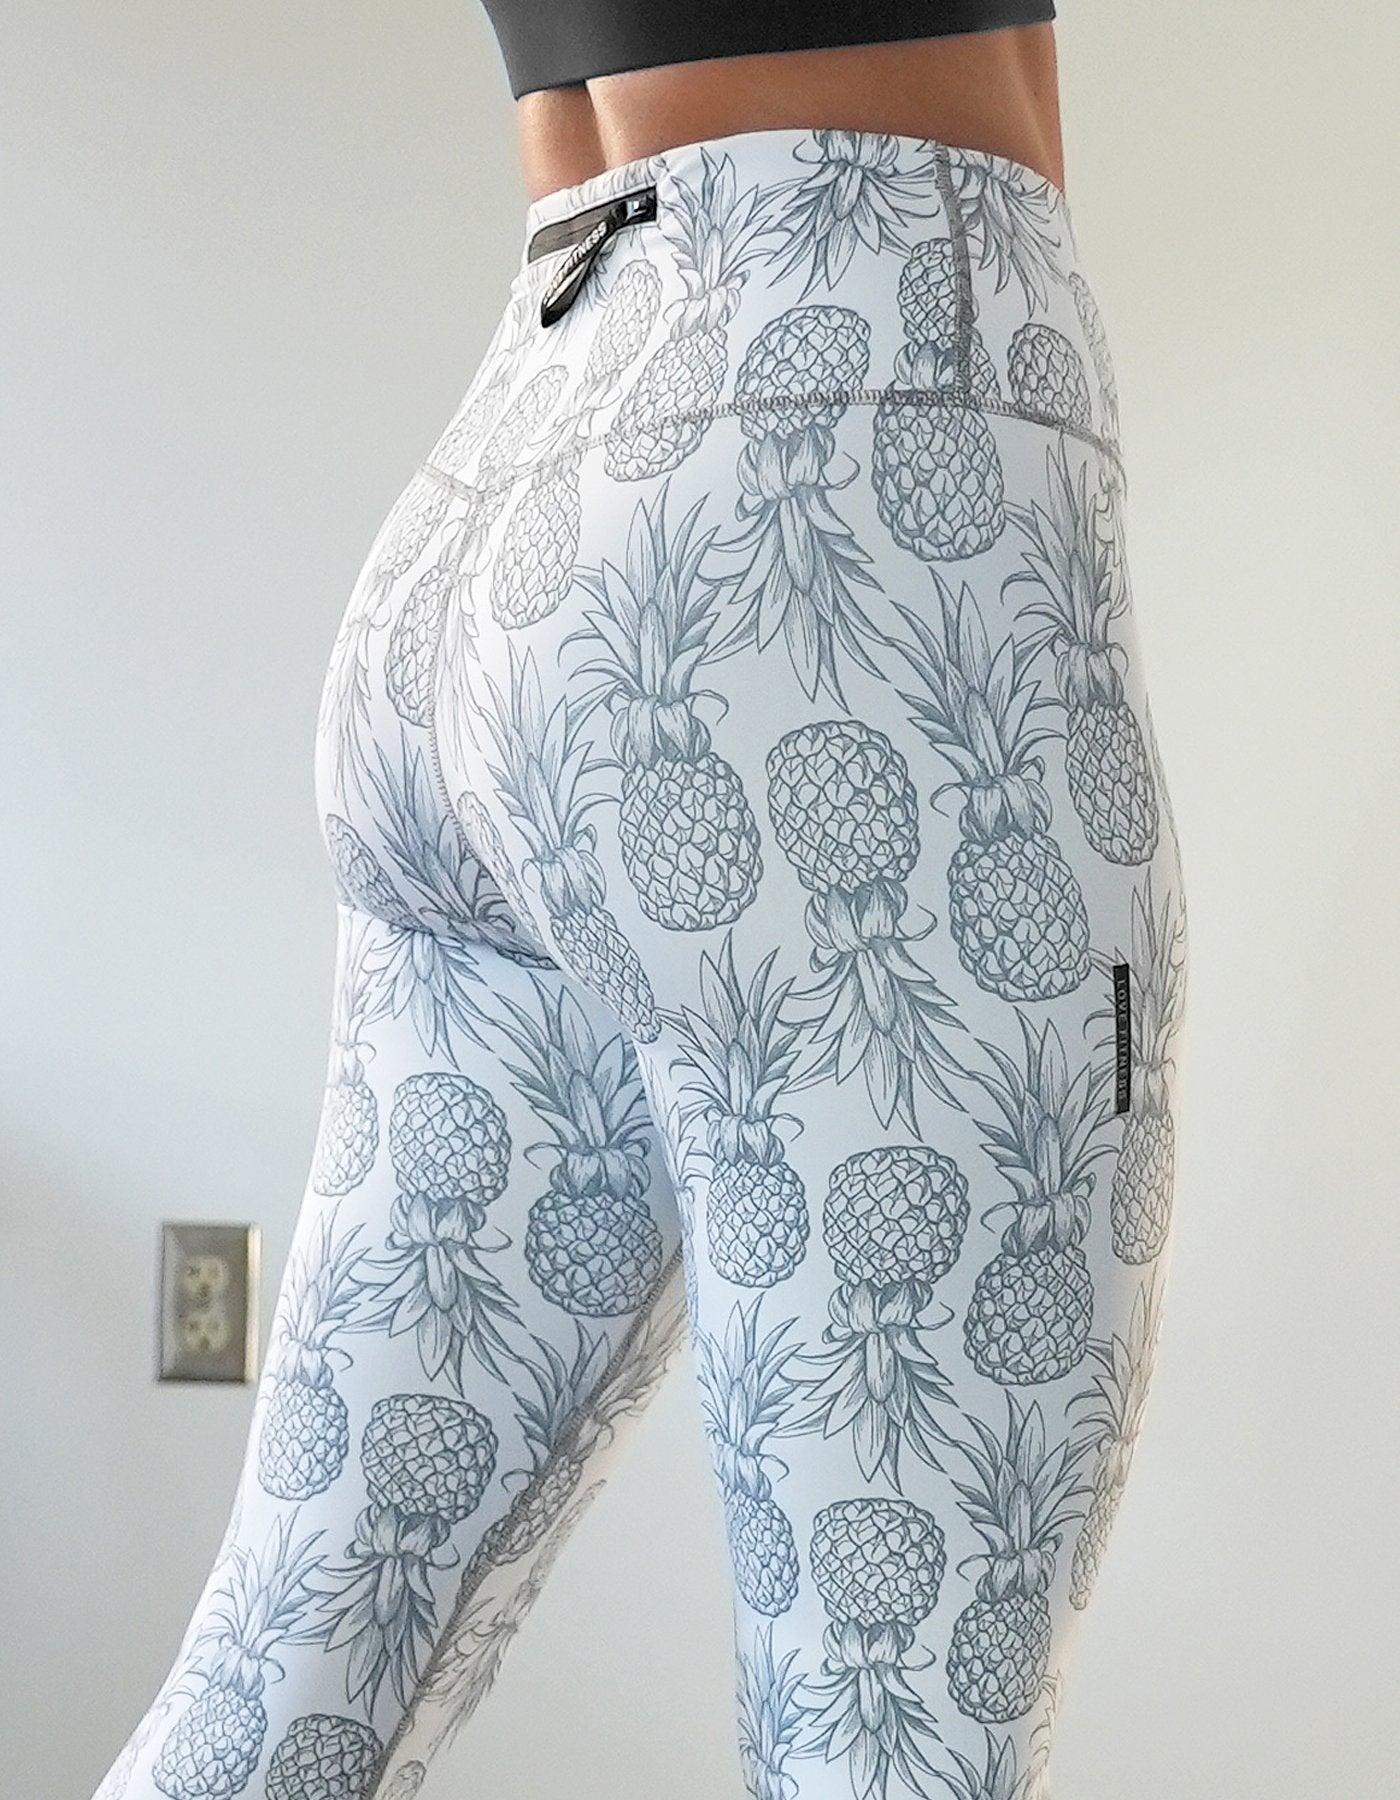 Pineapple Leggings - White  Pineapple leggings, Love fitness apparel,  White pineapple